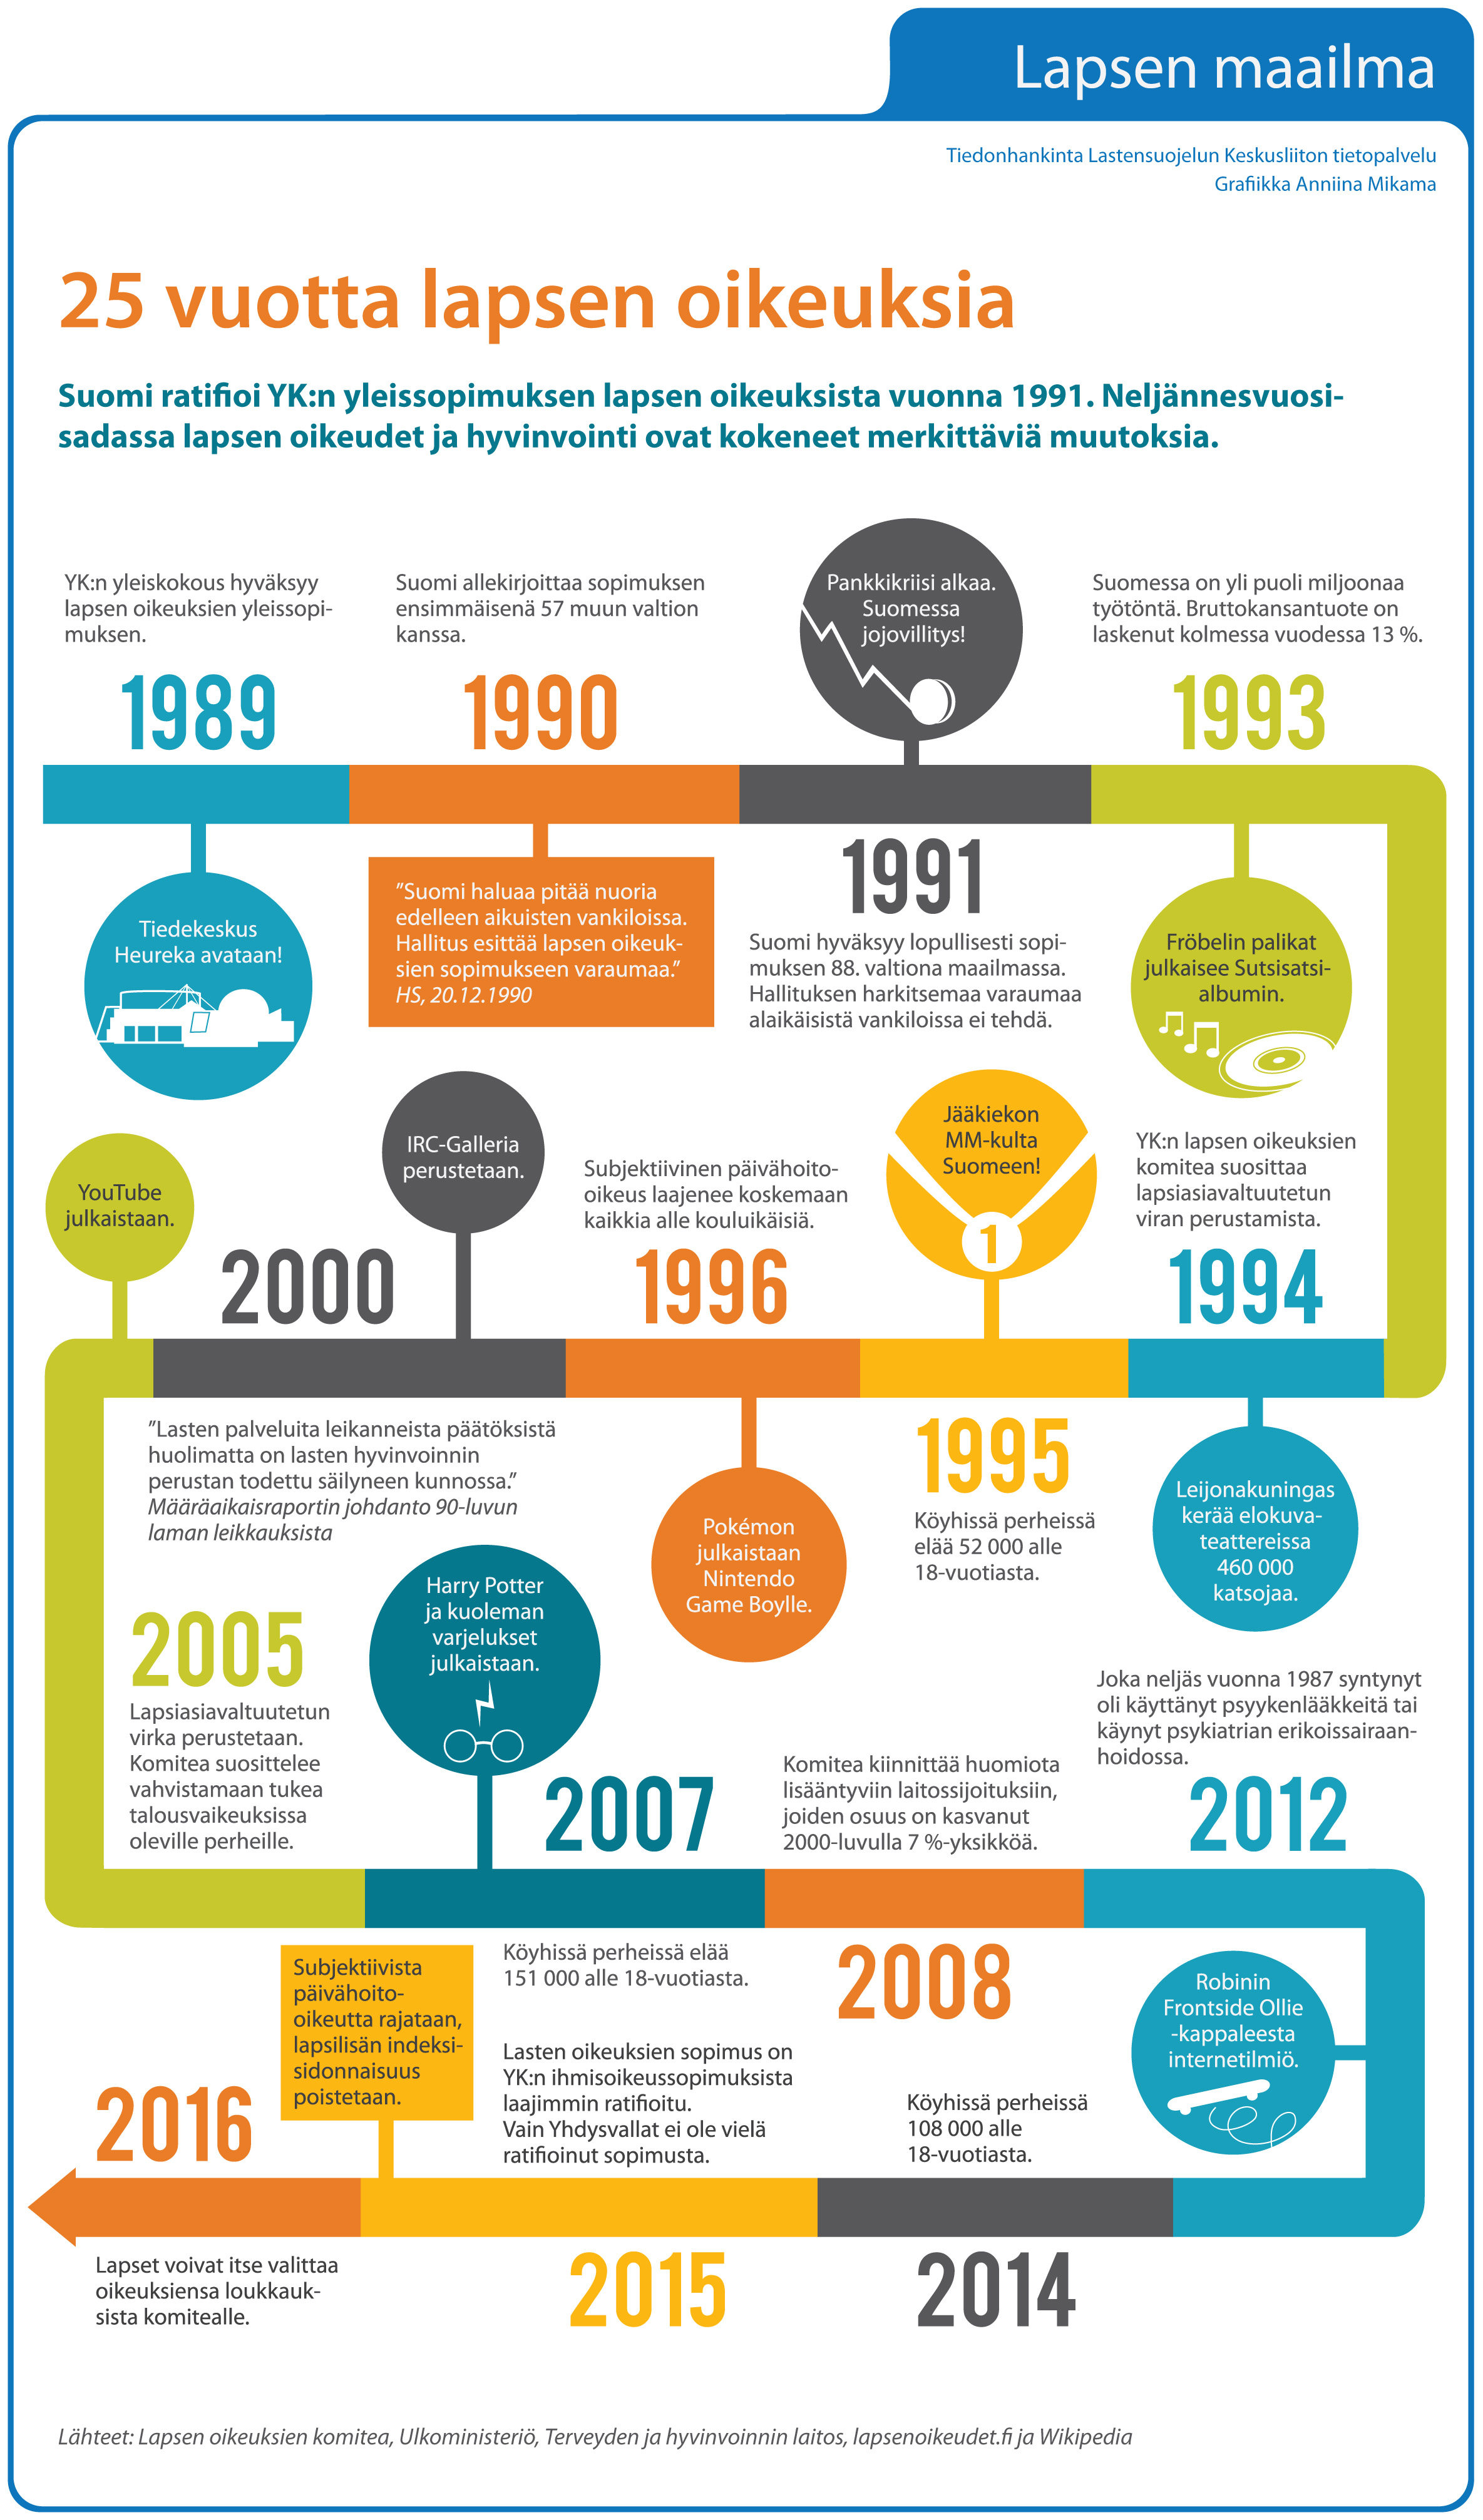 25 vuotta lapsen oikeuksia. Infografiikka